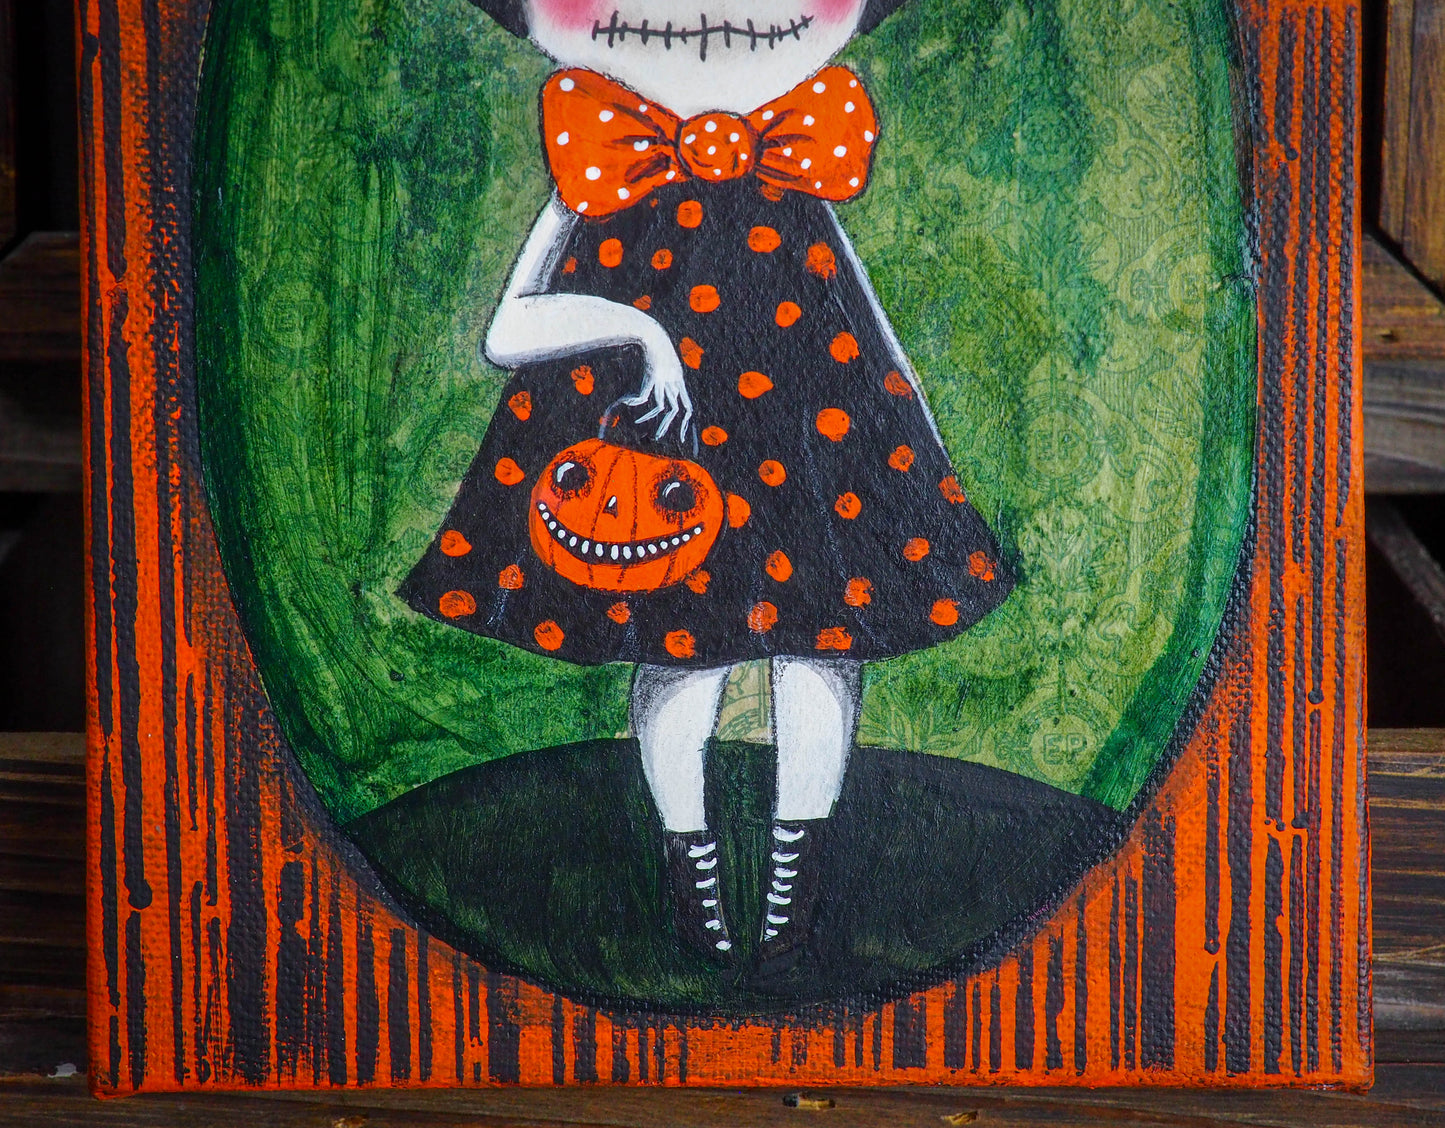 GHOUL GIRL - Halloween art painting by Danita Art, Original Art by Danita Art